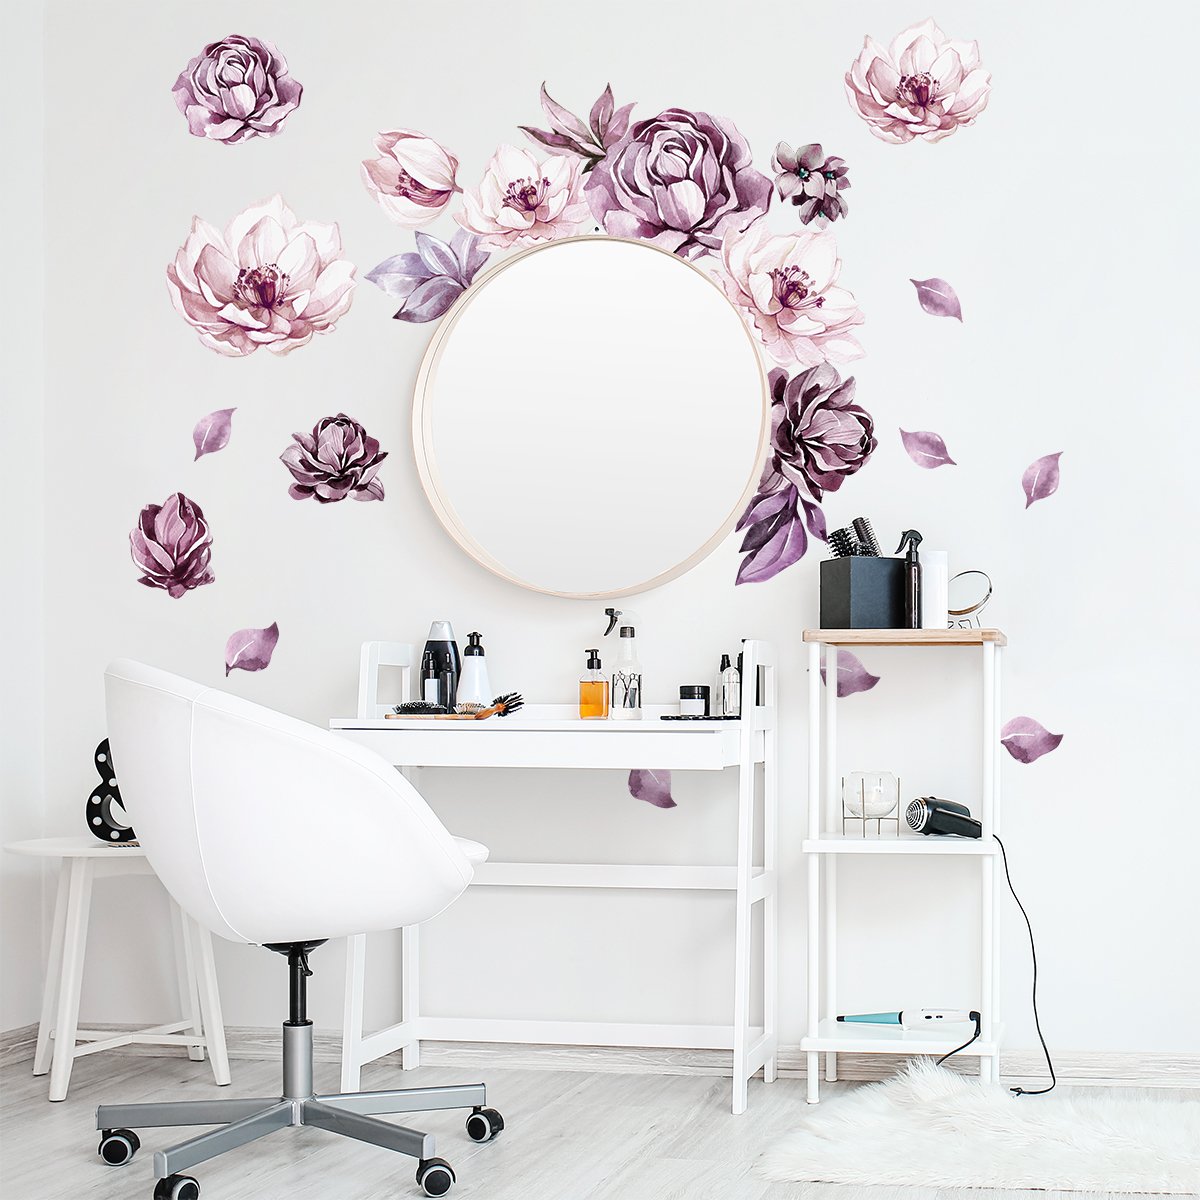 Naklejki do salonu fryzjerskiego - kwiaty#kolor_rozowy